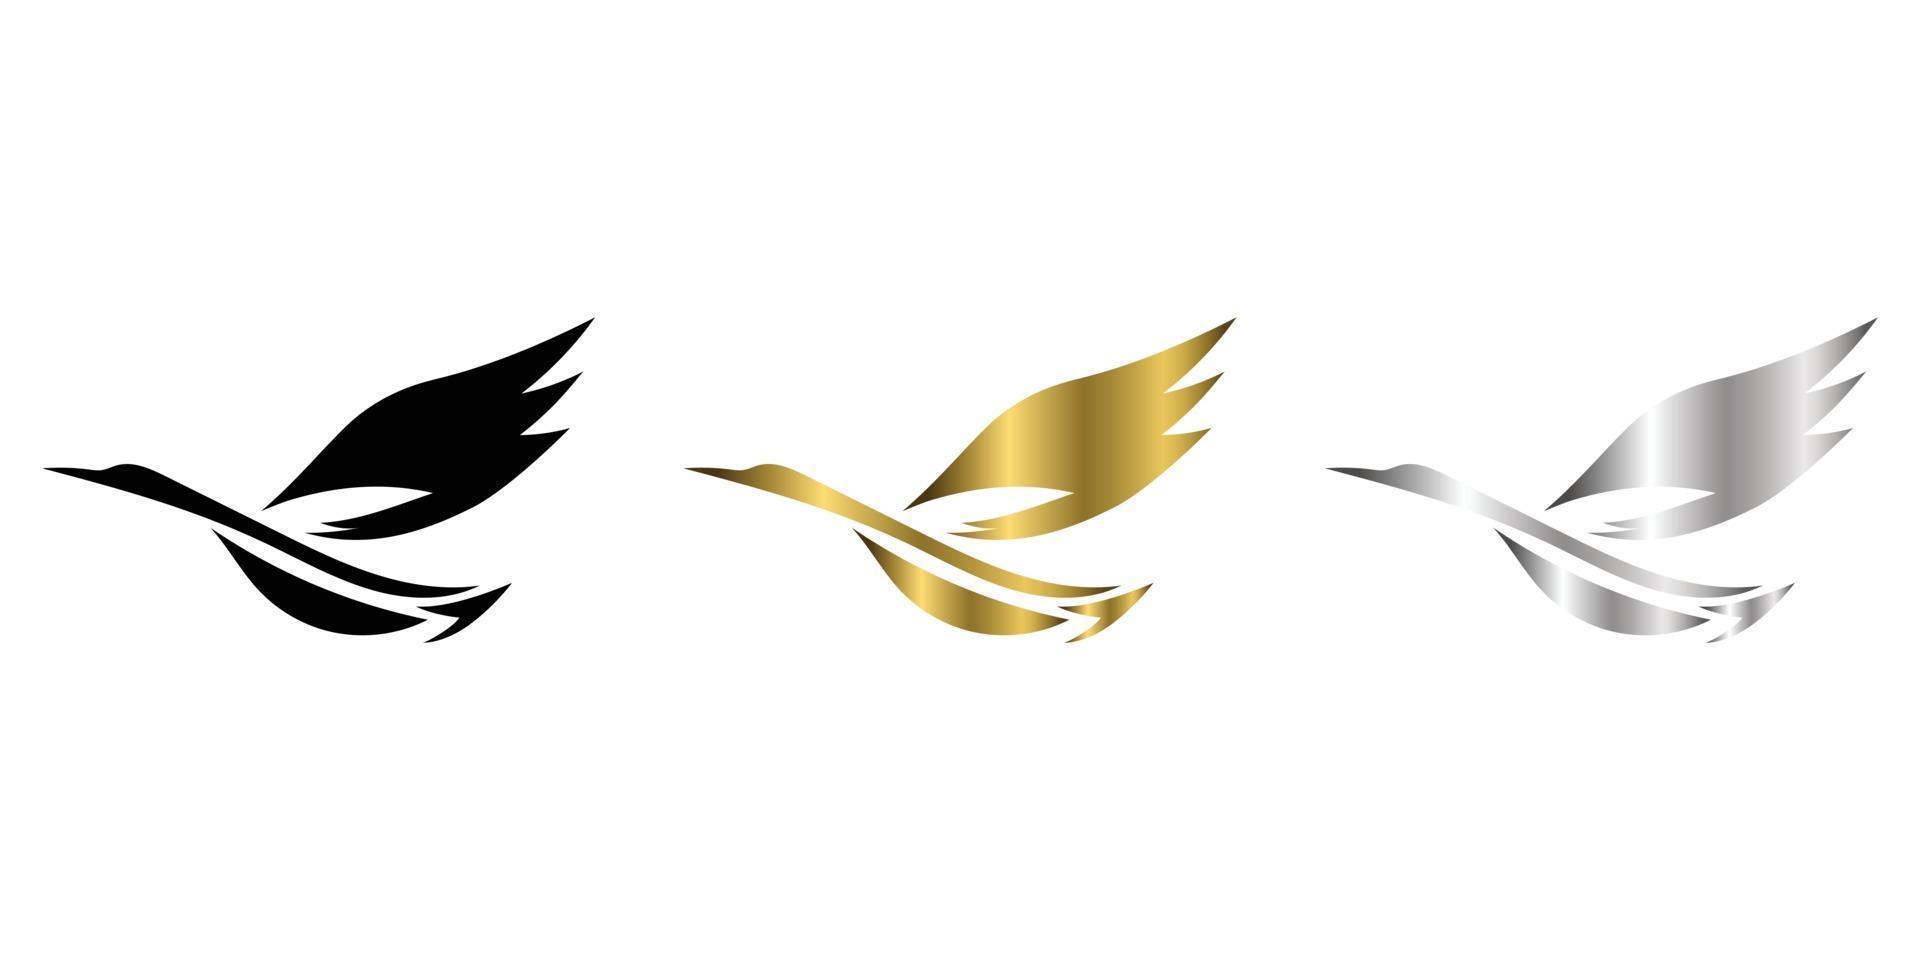 El vector abstracto de tres colores, negro, dorado, plateado, imagen de una garza voladora es adecuado para hacer logotipos o decoraciones.